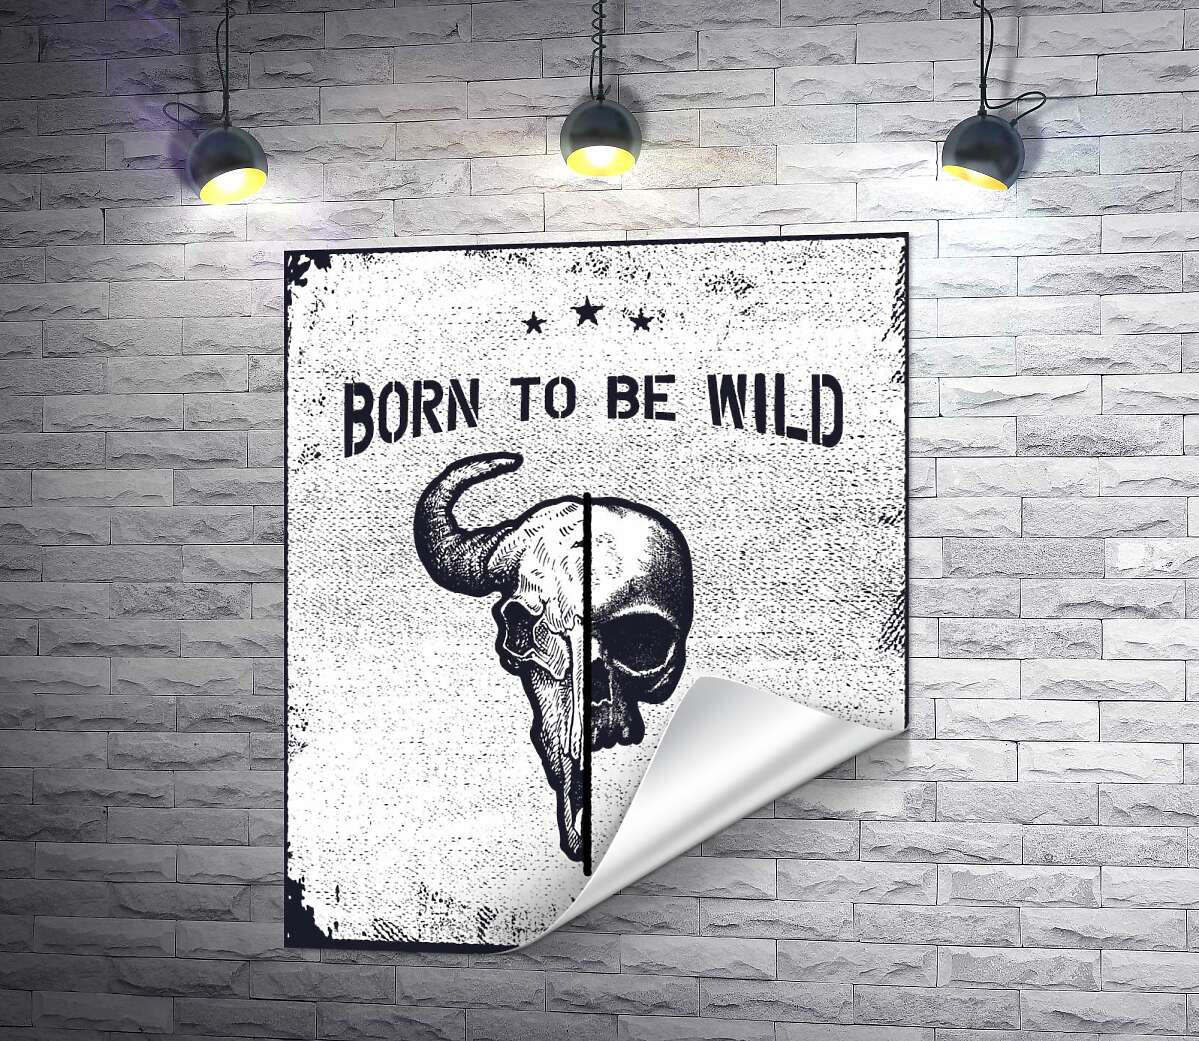 друк Єднання черепів людини та бика під фразою "born to be wild"